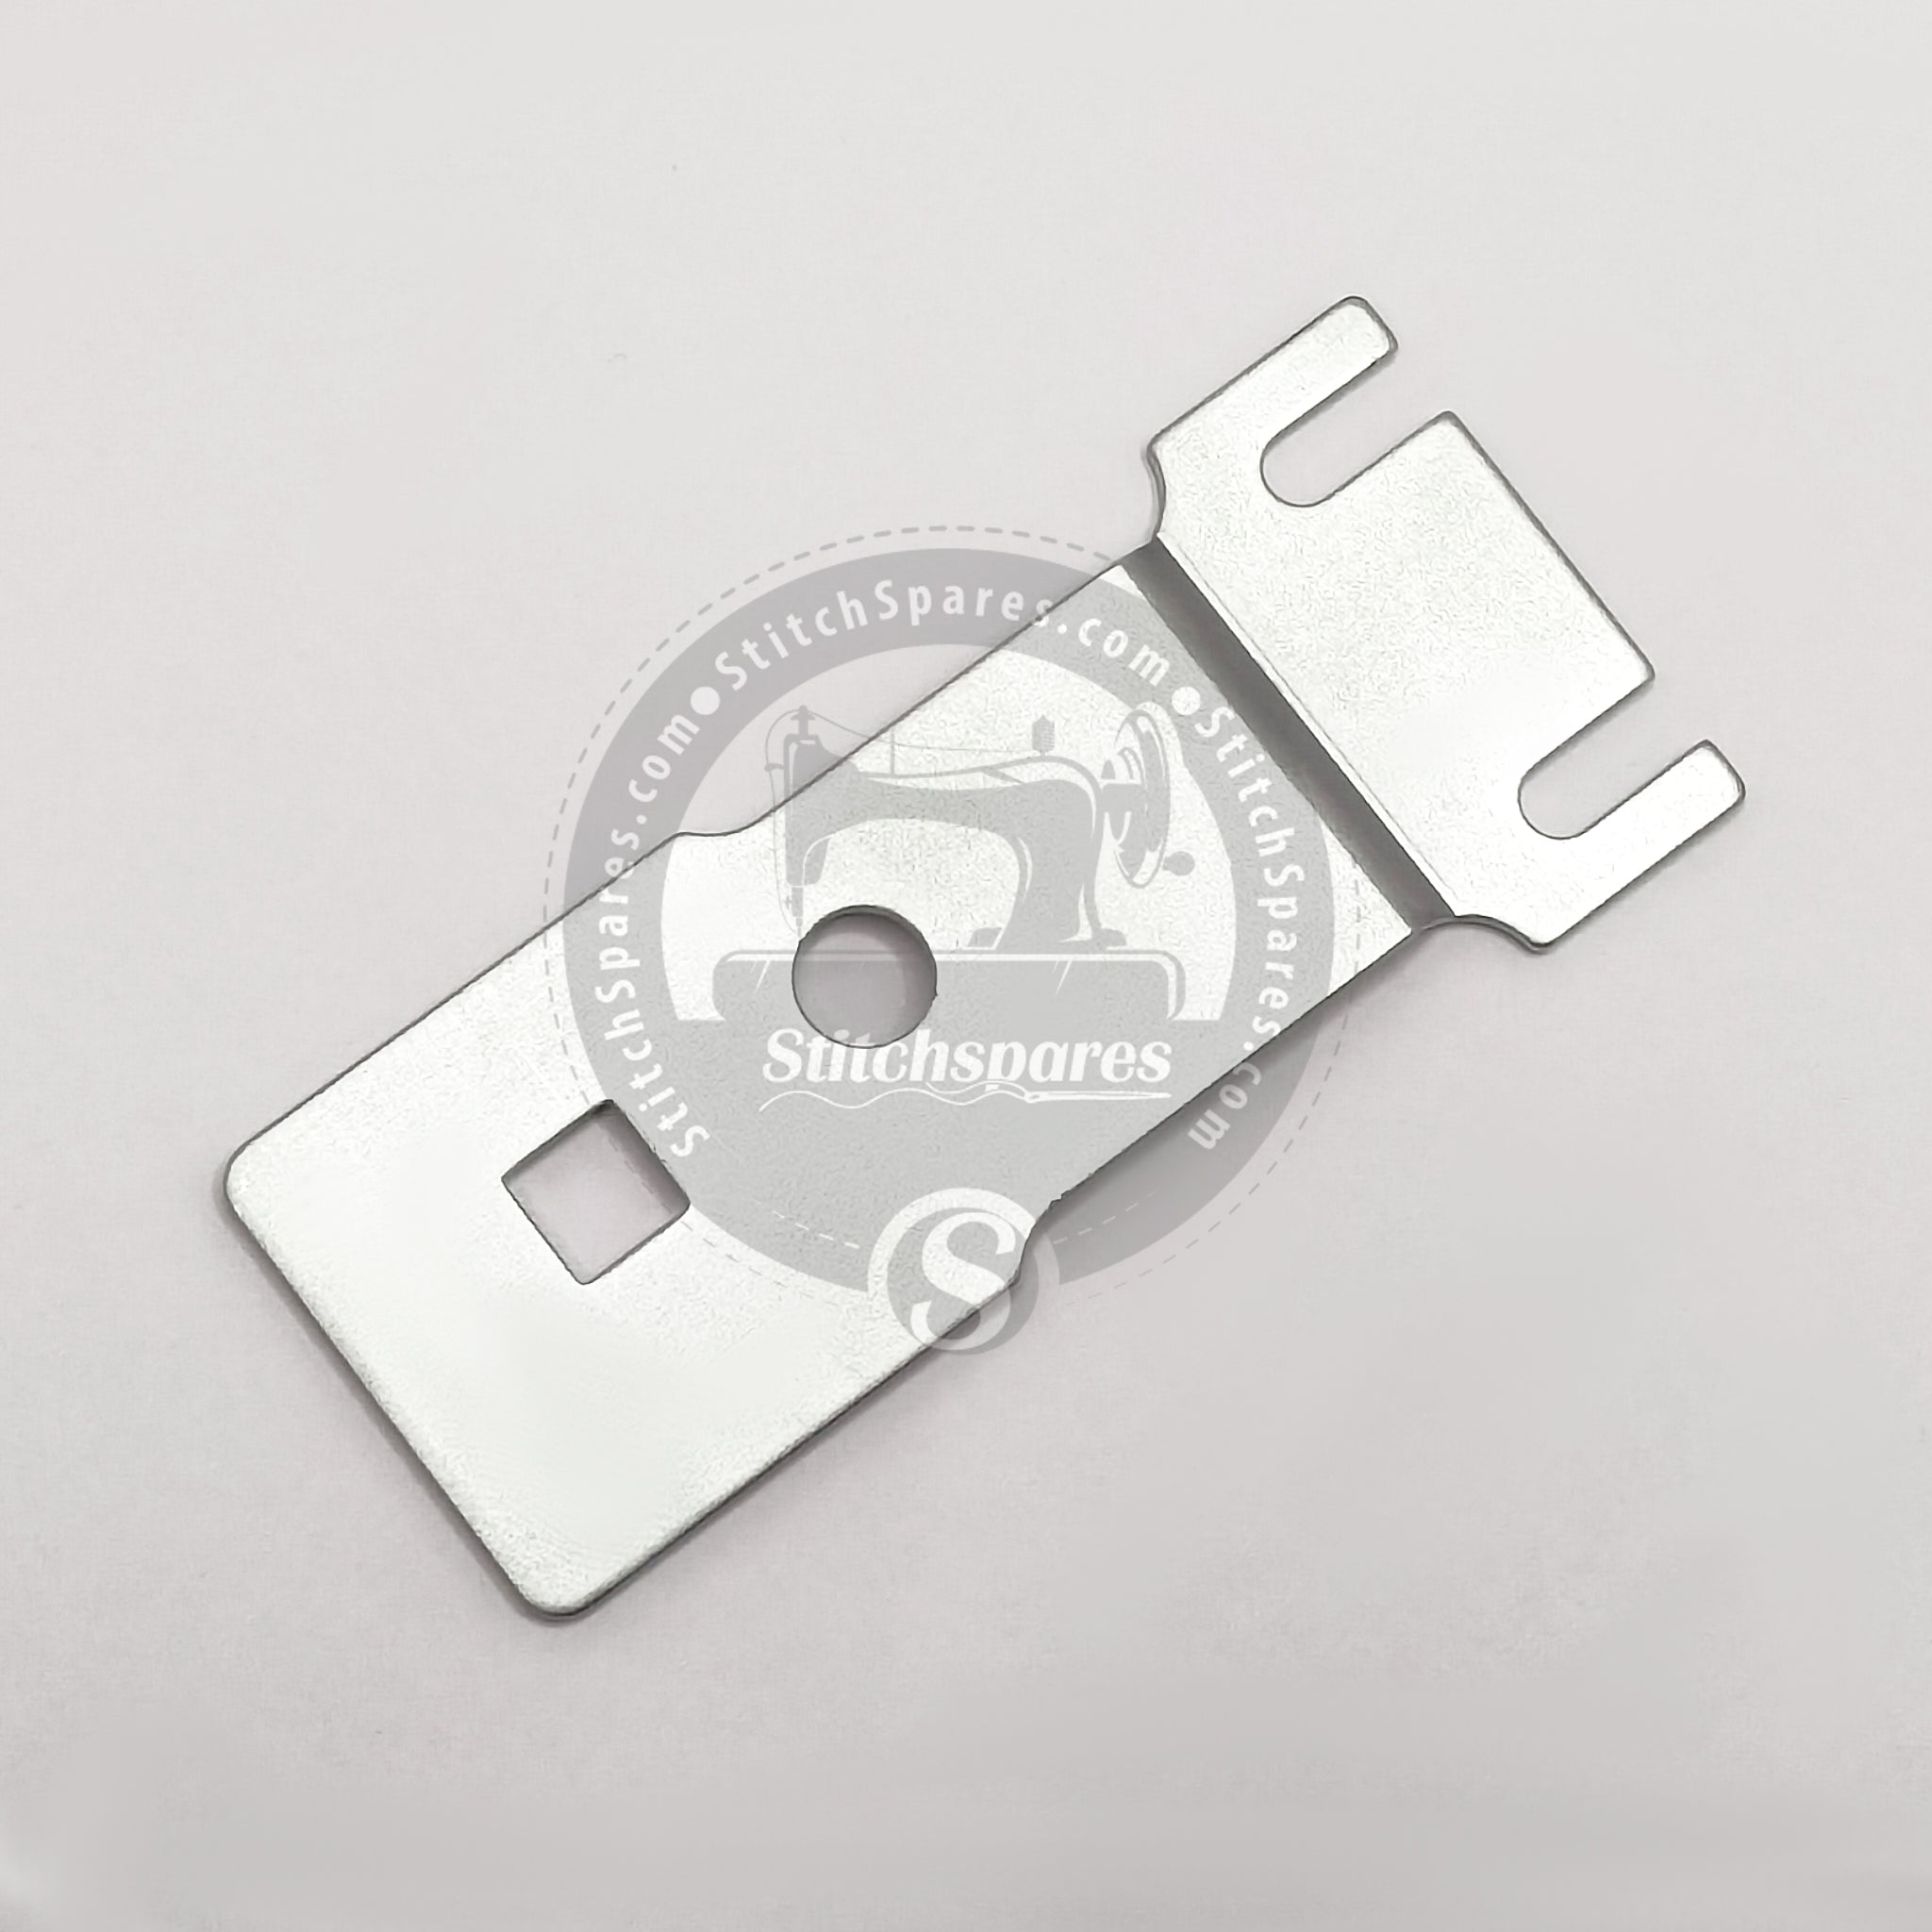 B2529-372-000 / B2529-372-C00 Vorschubplatte Kleiner Knopf Für JUKI MB-372 Knopfstichmaschine Ersatzteile